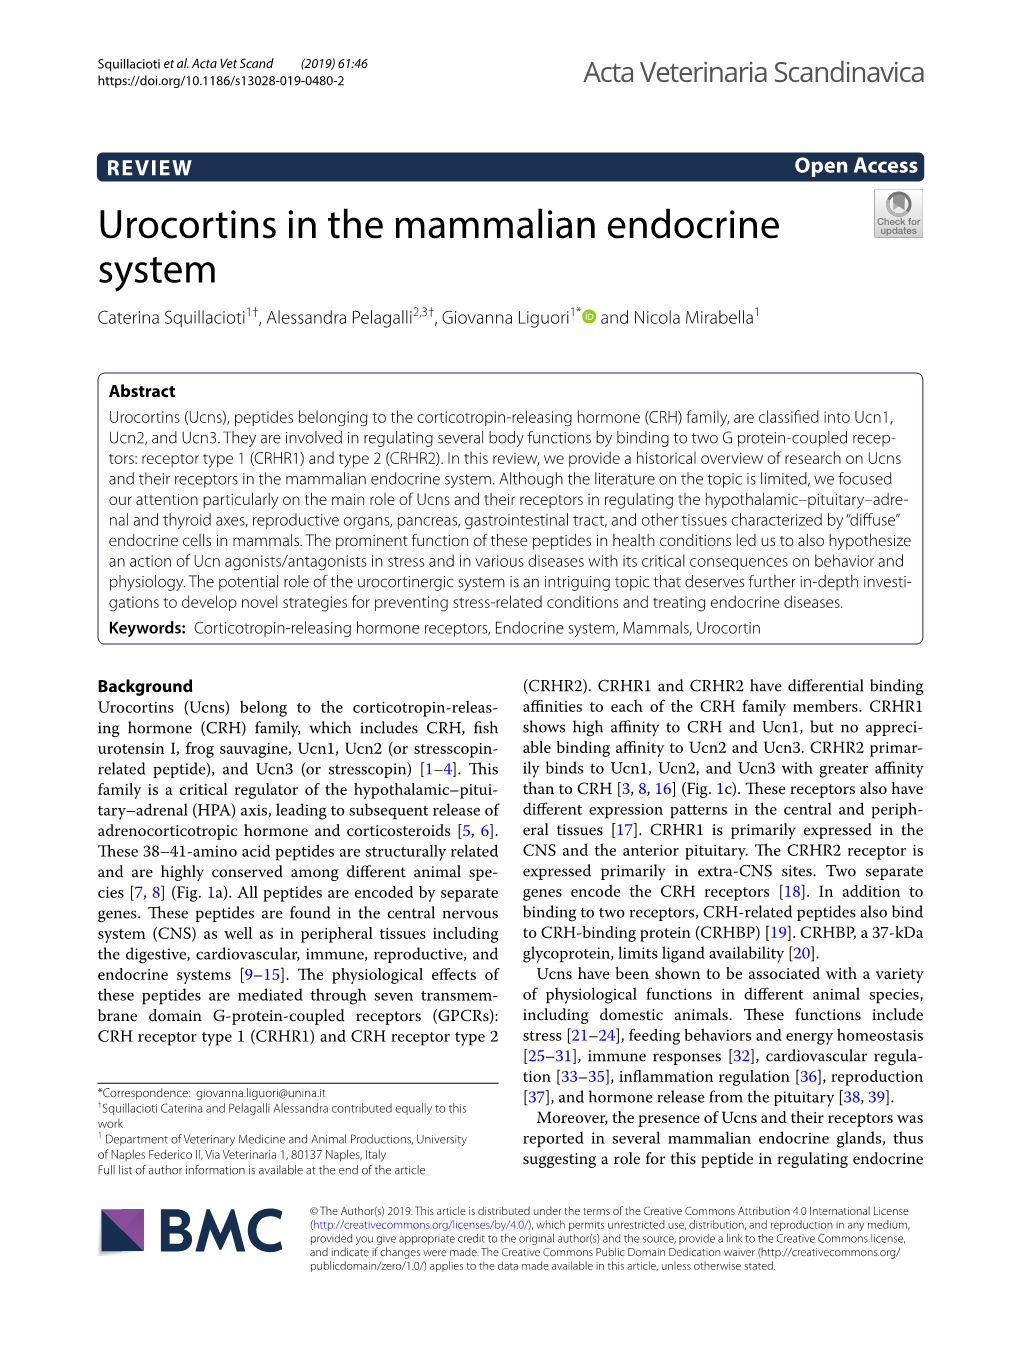 Urocortins in the Mammalian Endocrine System Caterina Squillacioti1†, Alessandra Pelagalli2,3†, Giovanna Liguori1* and Nicola Mirabella1